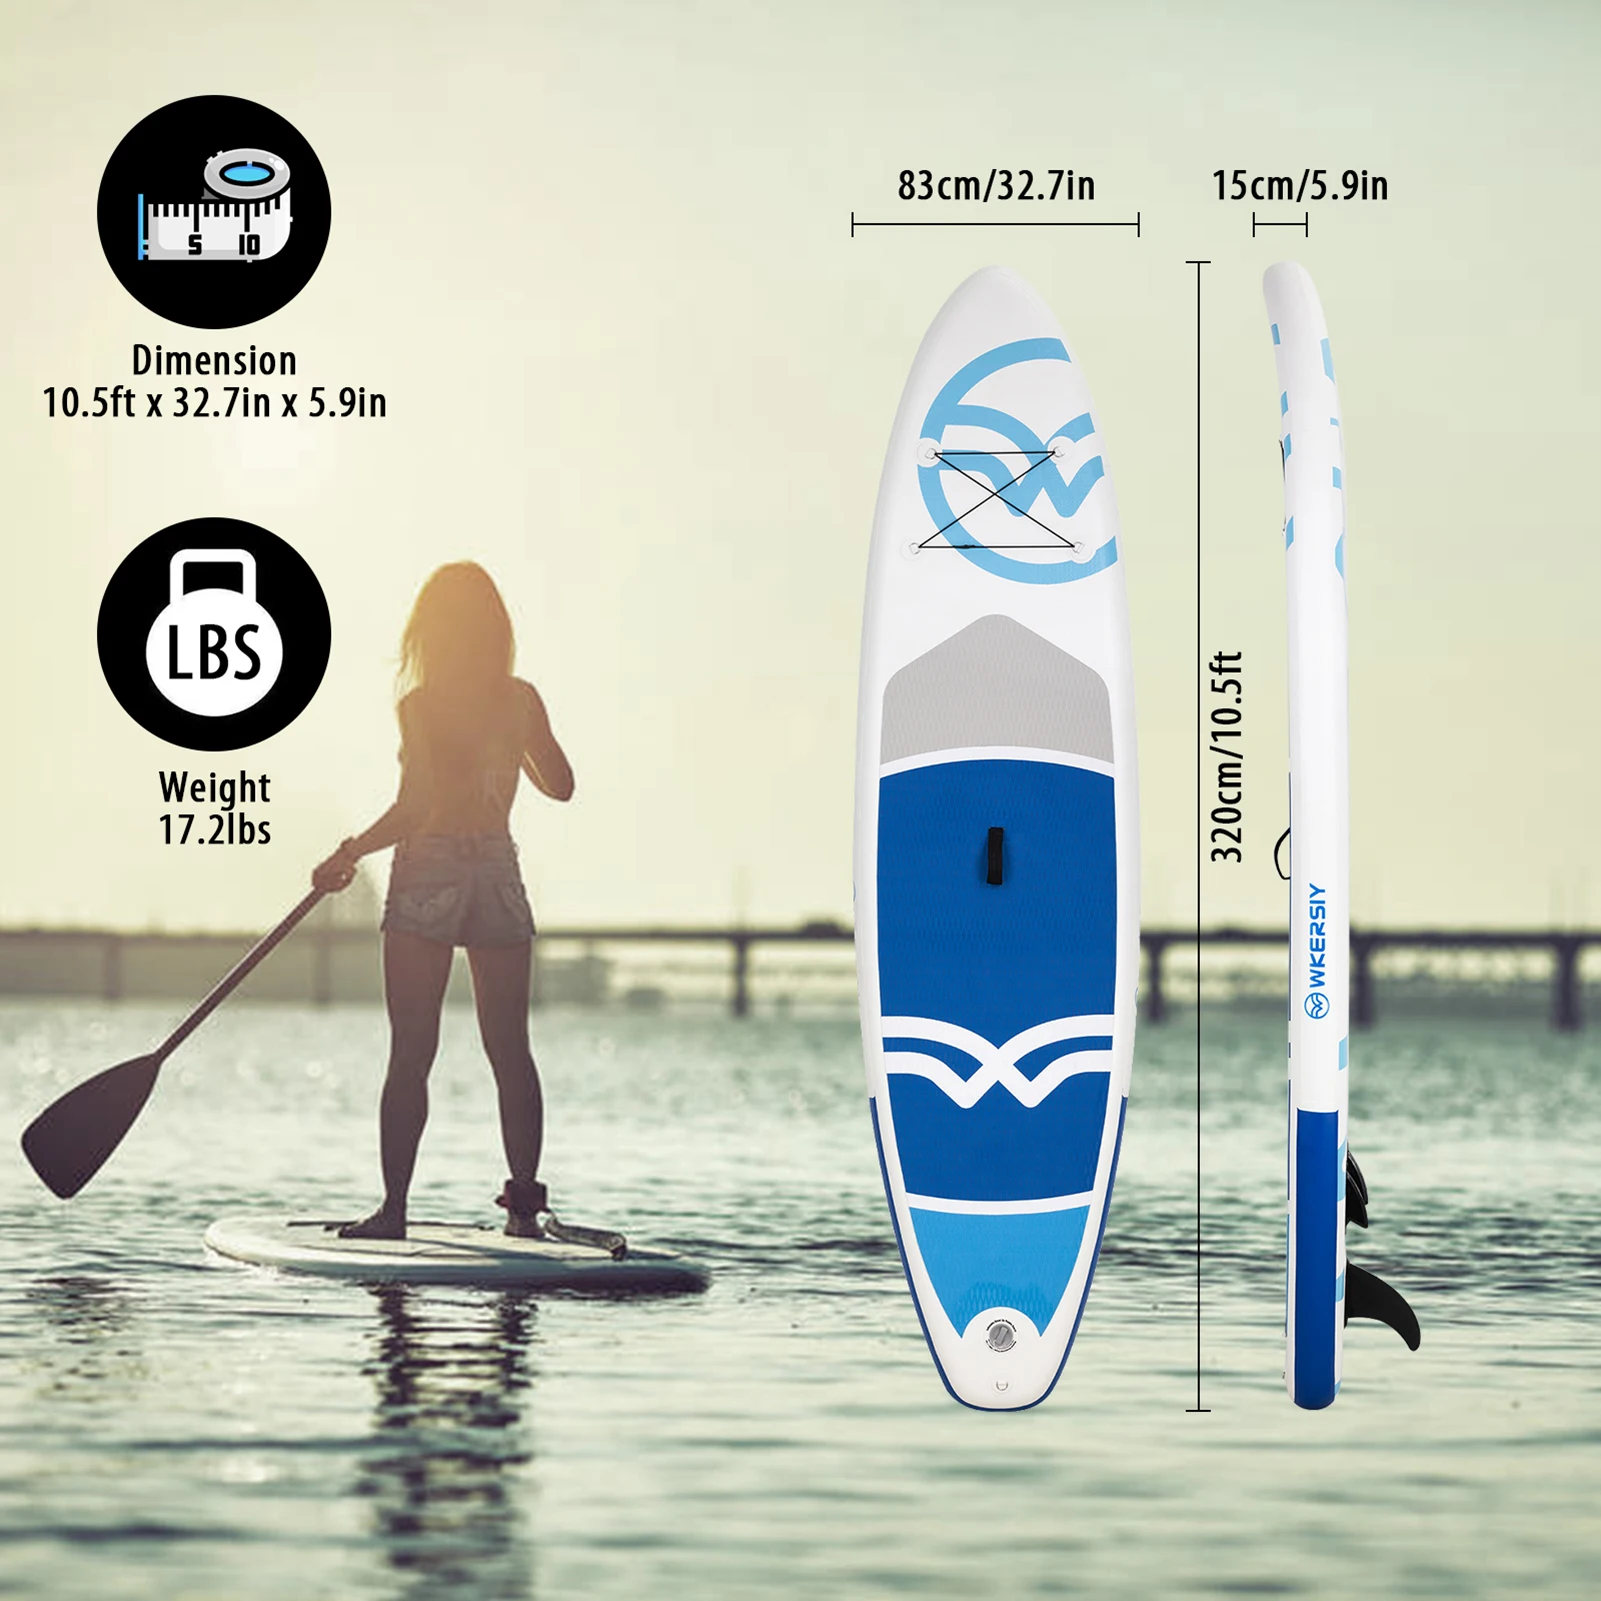 Aufblasbares SUP (Stand Up Paddle Board) Surf Board mit Luftpumpe, Tragetasche, Flosse, Paddel, Zubehör komplett 4